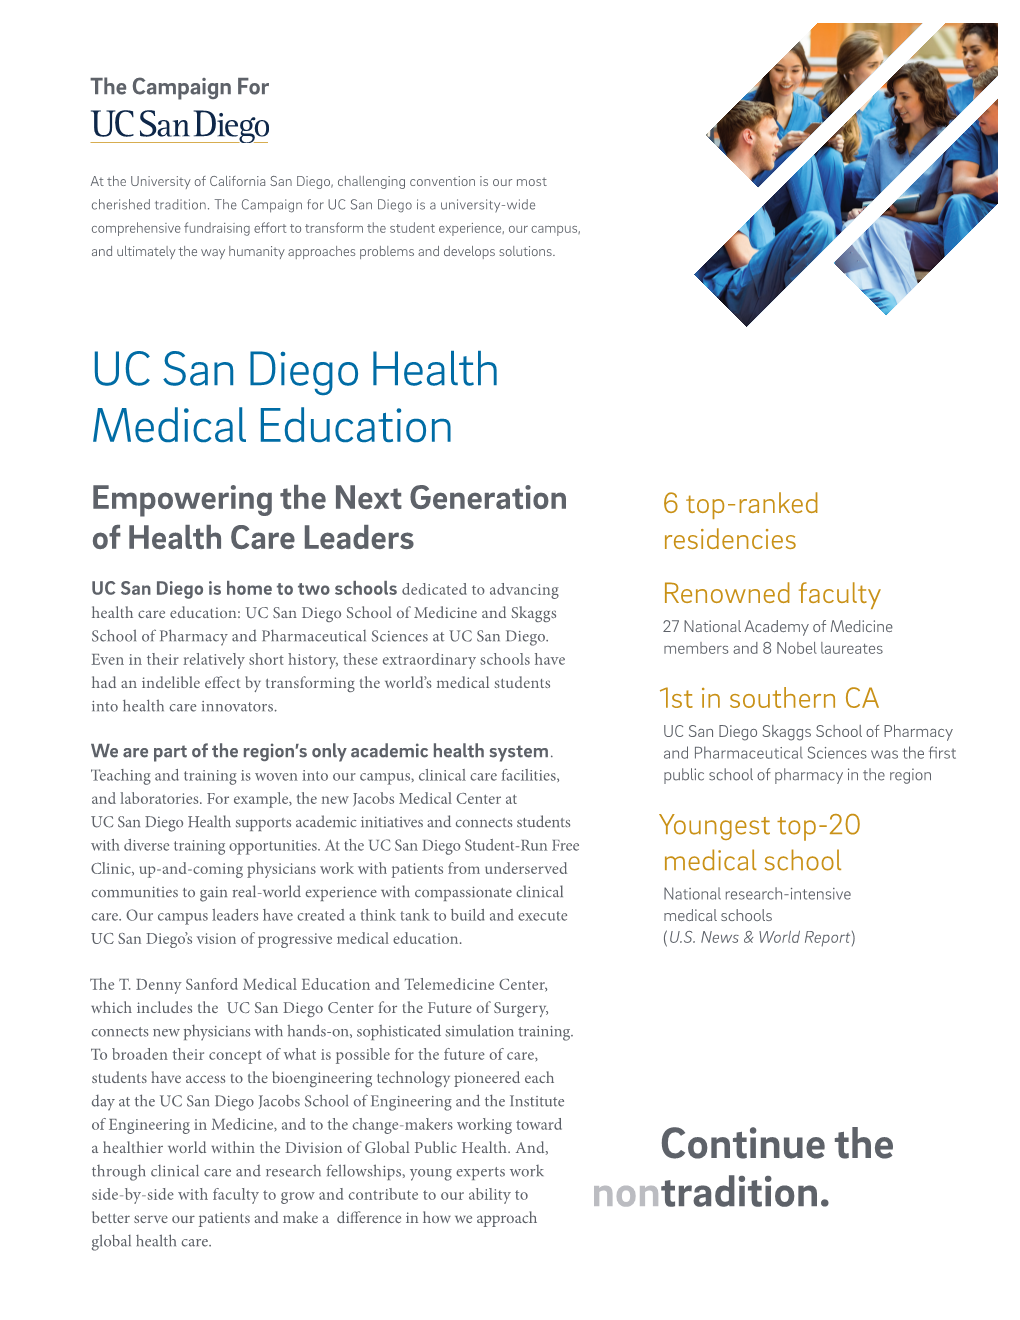 UC San Diego Health Medical Education